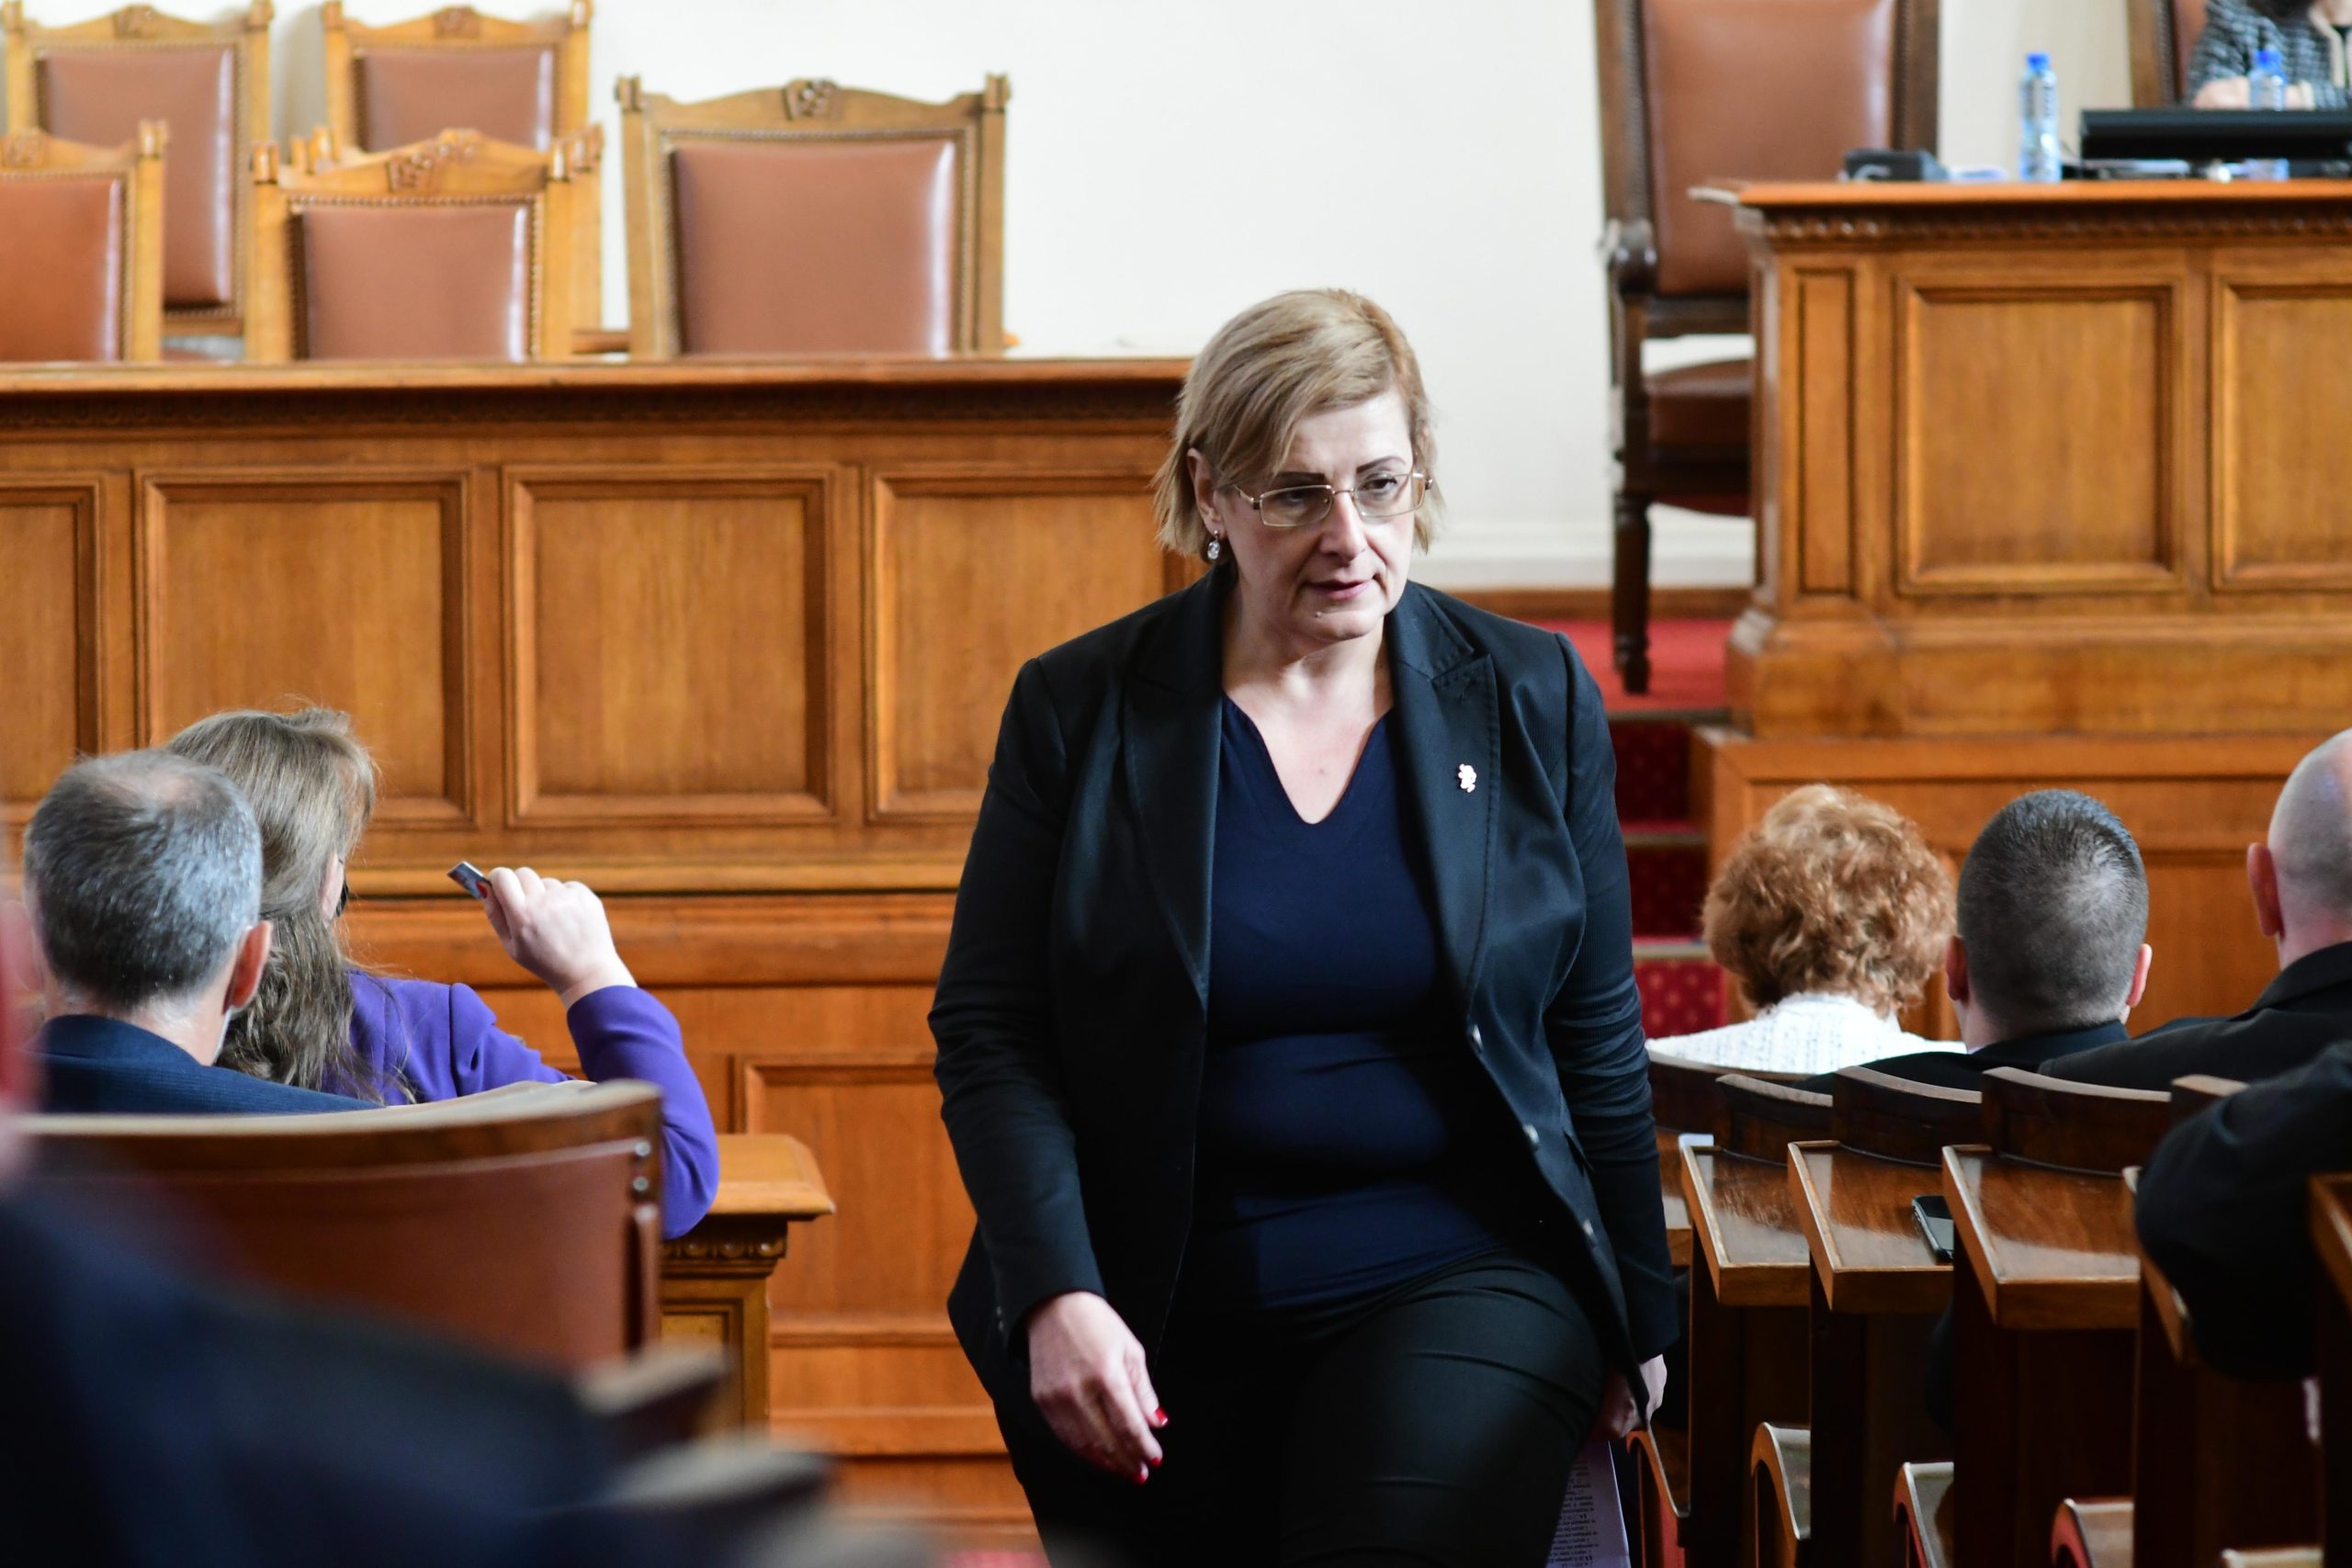 Депутатът от Възраждане Елена Гунчева е била съветвана в сферата